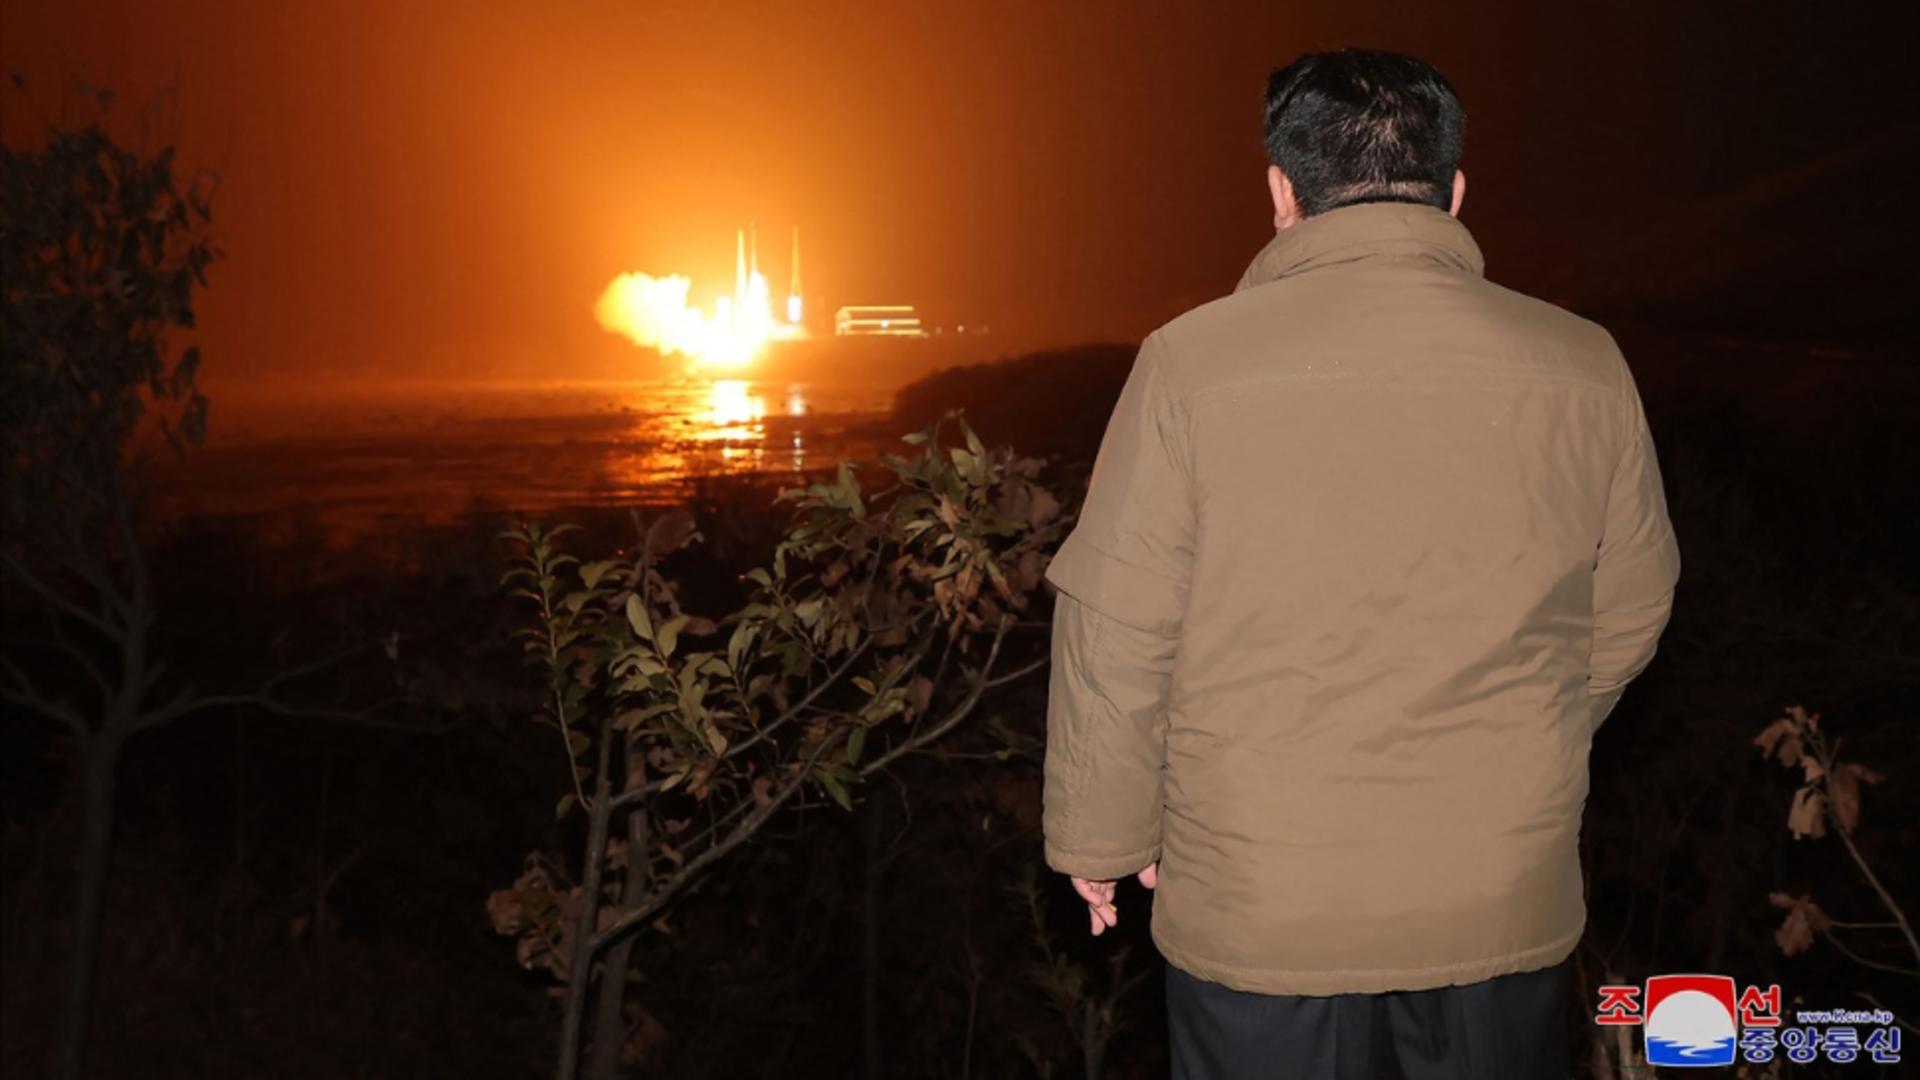 Veste proastă pentru Kim Jong Un după ce Coreea de Nord a lansat o nouă rachetă balistică / Foto: Profi Media